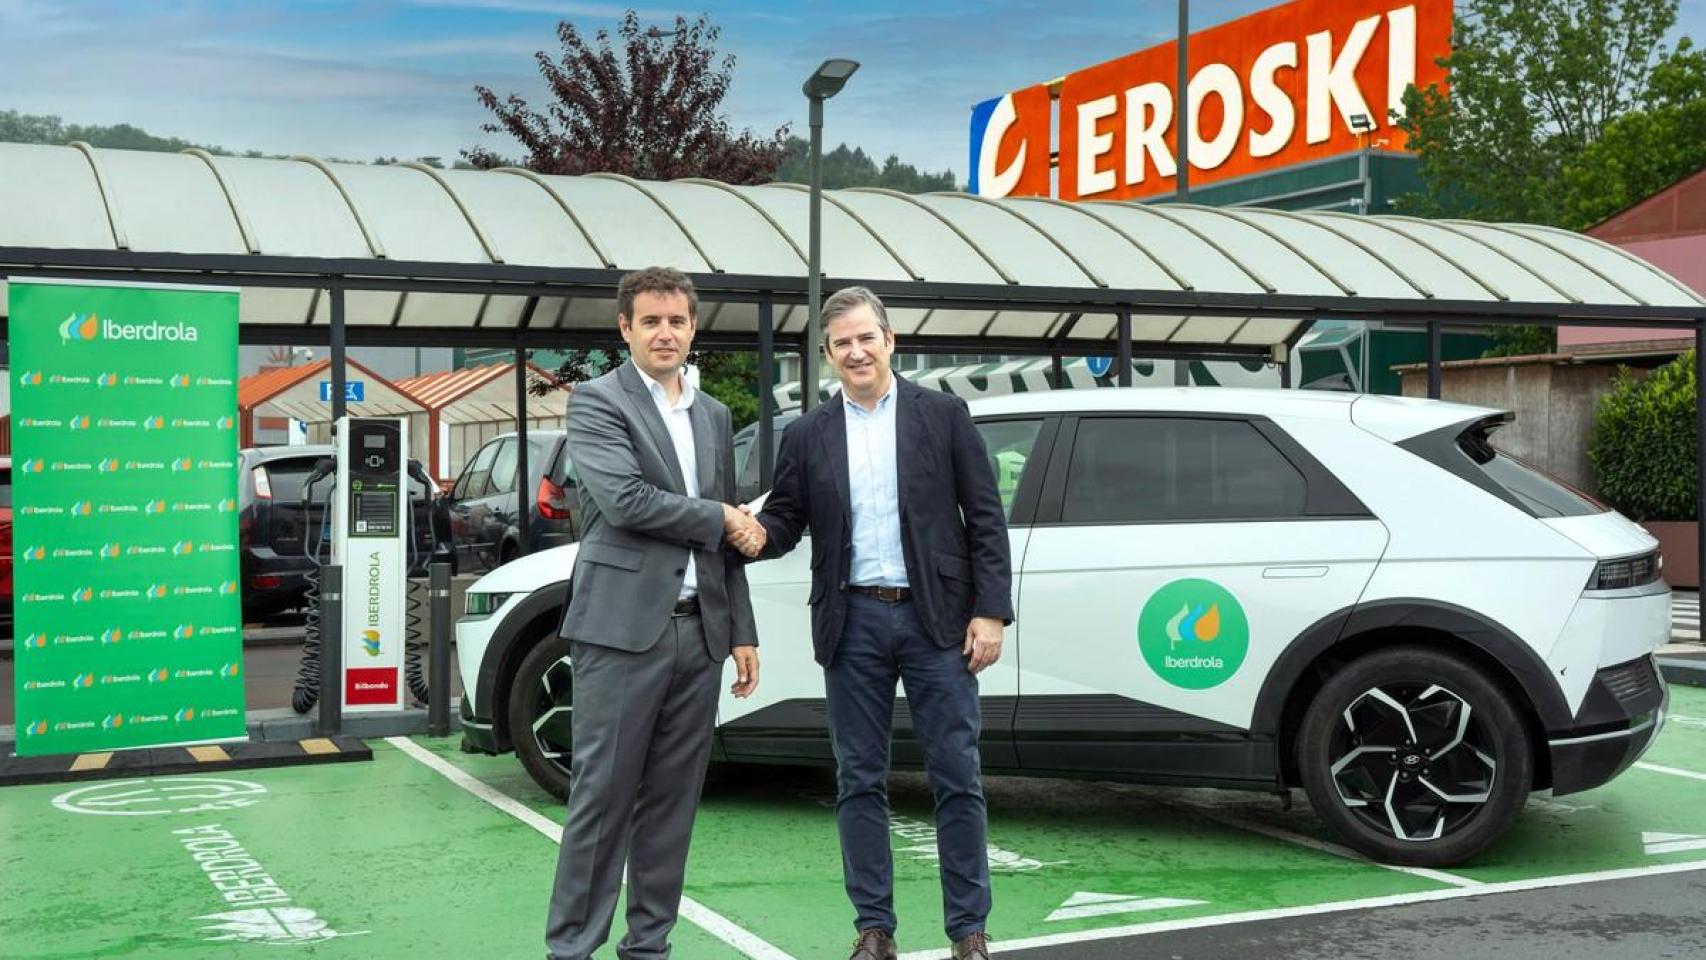 Eroski e Iberdrola instalarán mil puntos de recarga para vehículos eléctricos en su red de supermercados